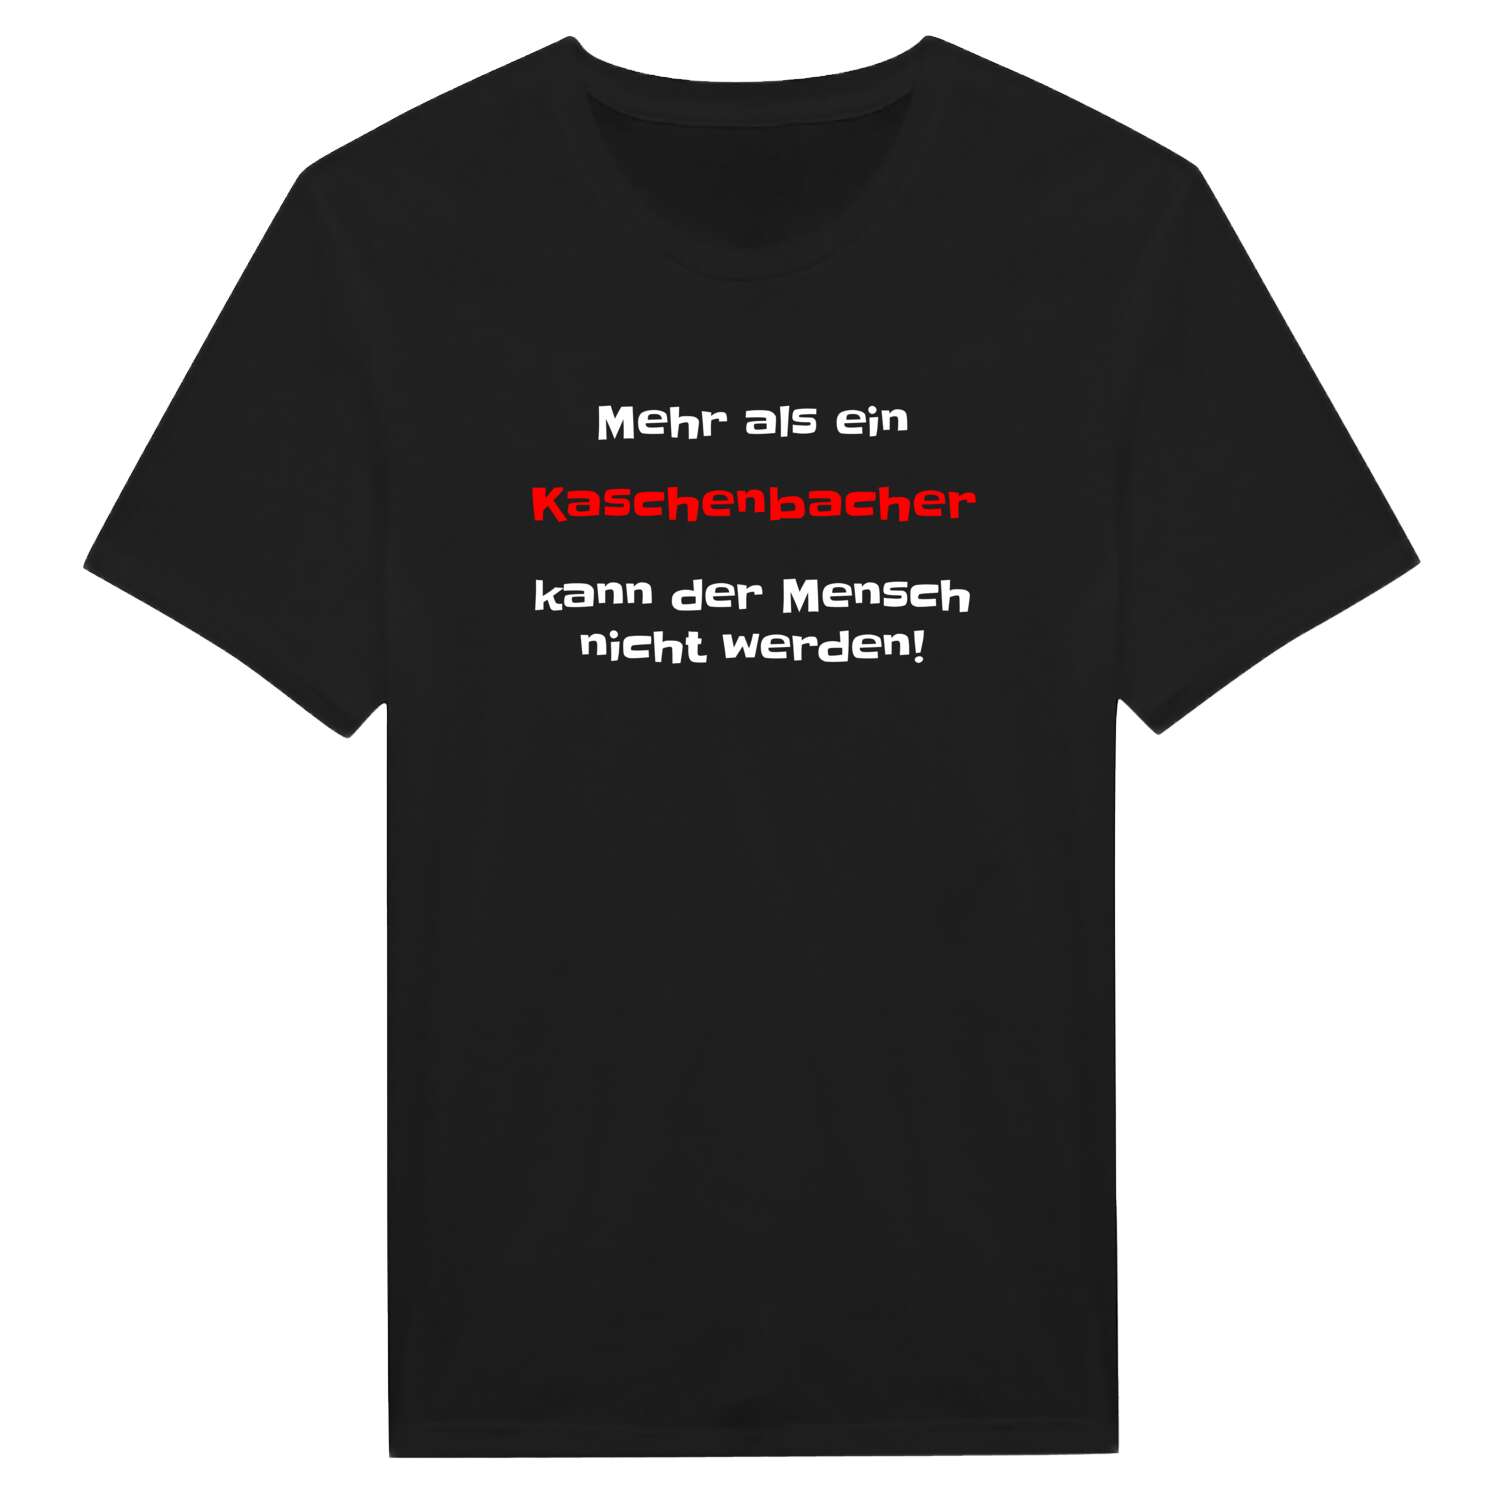 Kaschenbach T-Shirt »Mehr als ein«